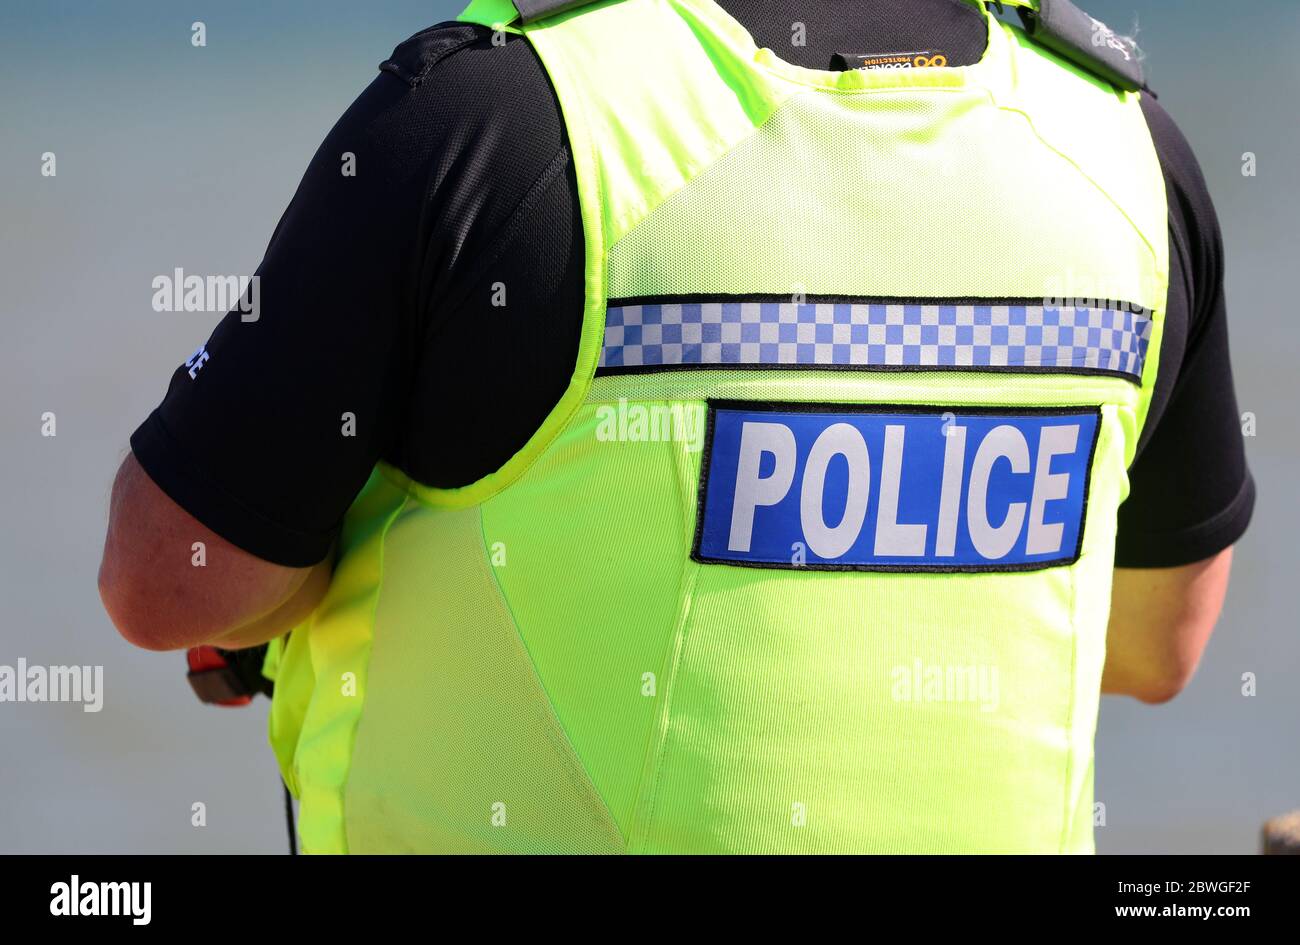 Hampshire ufficiale di polizia a benzina su una spiaggia nel Regno Unito Foto Stock